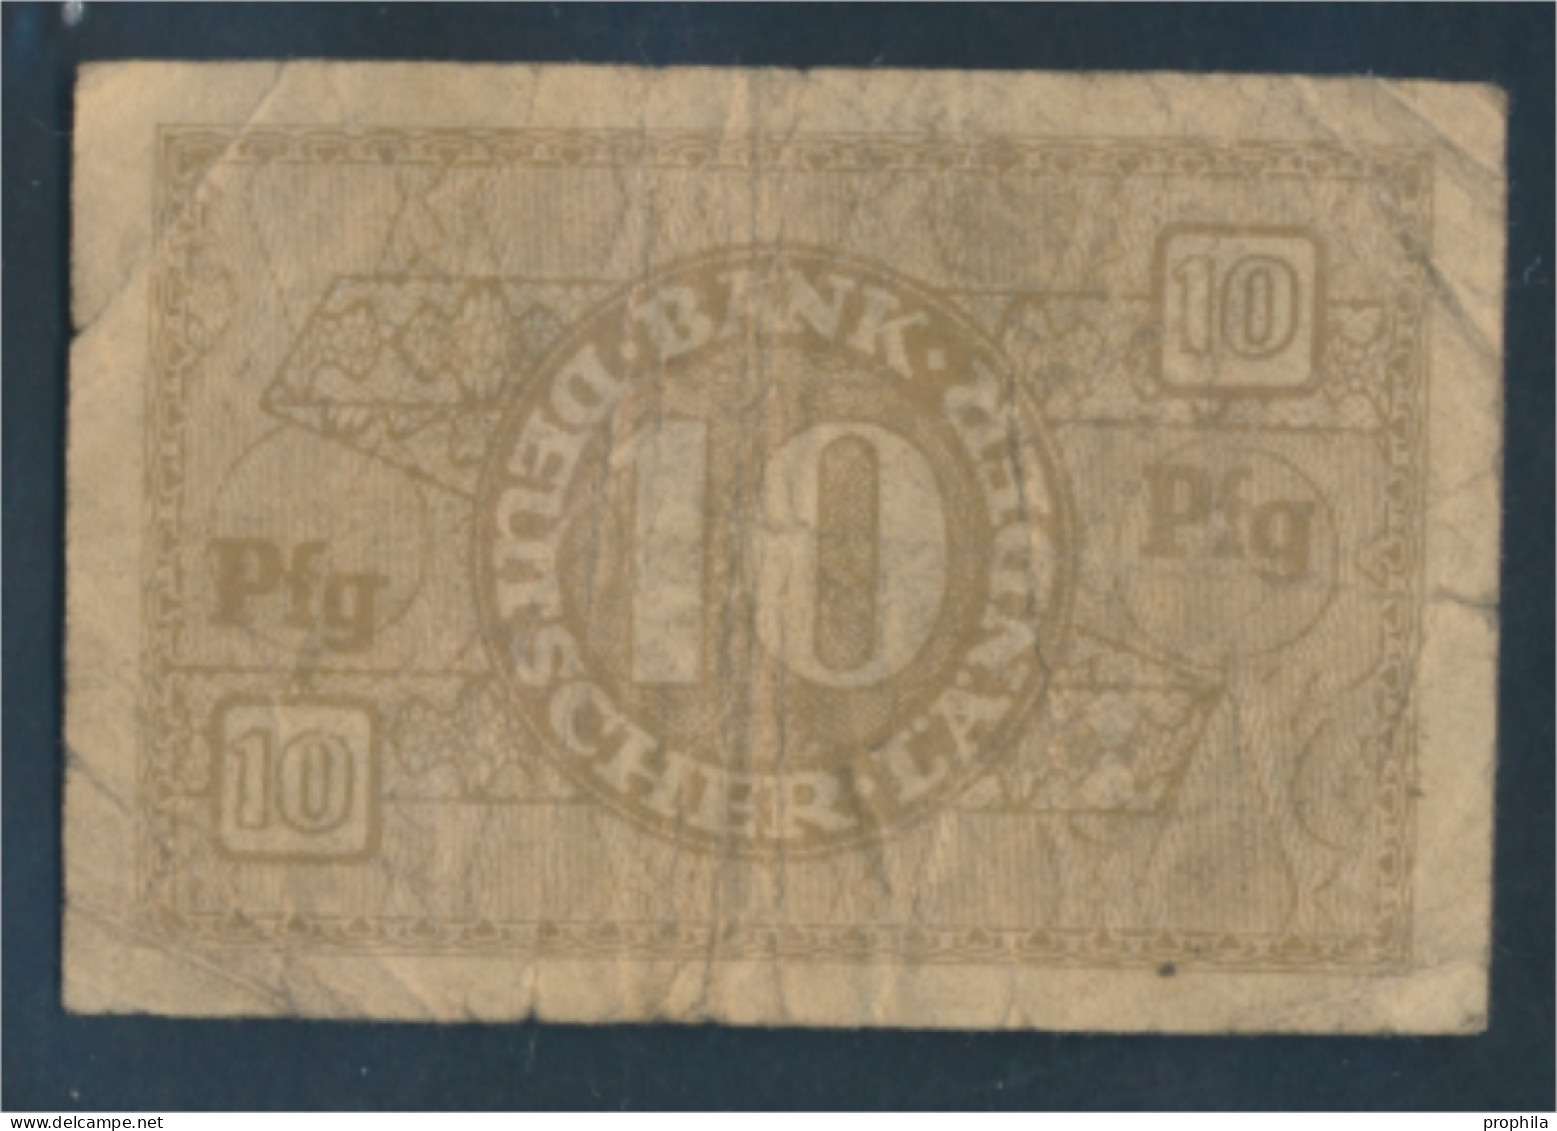 BRD Rosenbg: 251b Gebraucht (III) 1948 10 Pfennig (10288365 - 10 Pfennig